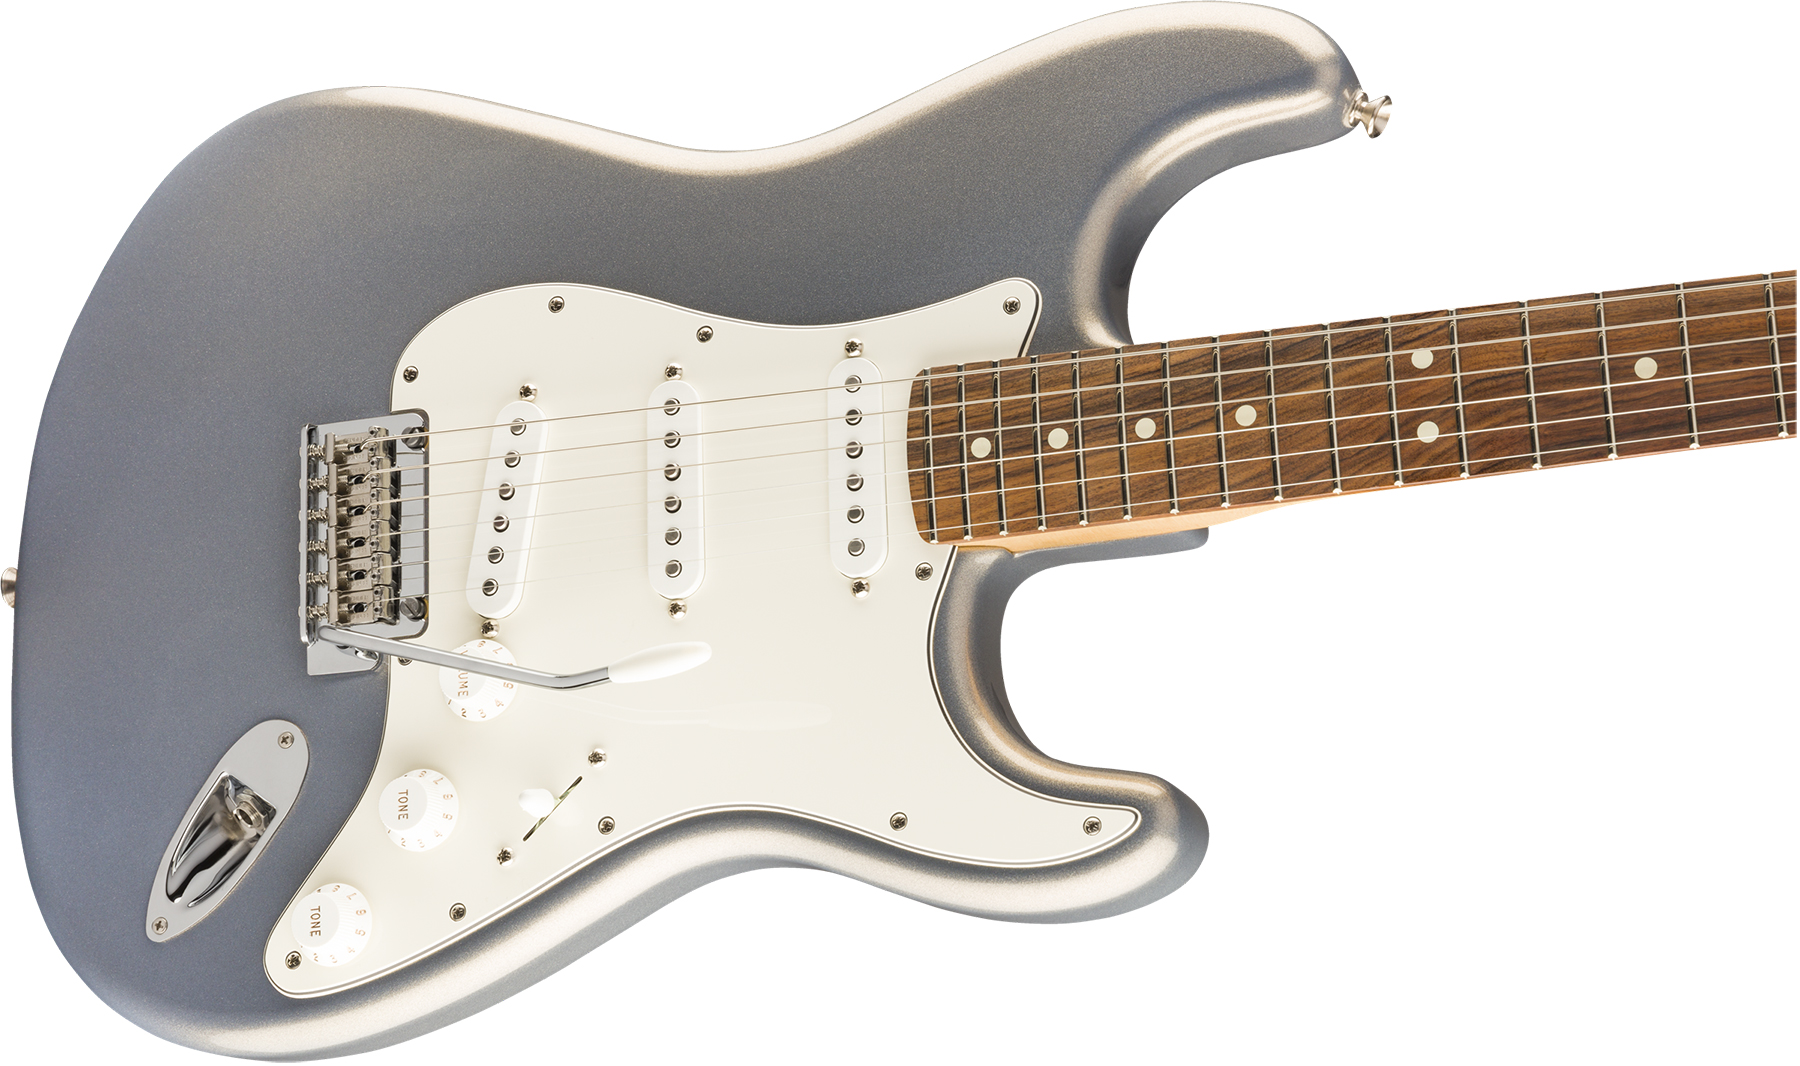 Fender Strat Player Mex 3s Trem Pf - Silver - Elektrische gitaar in Str-vorm - Variation 2